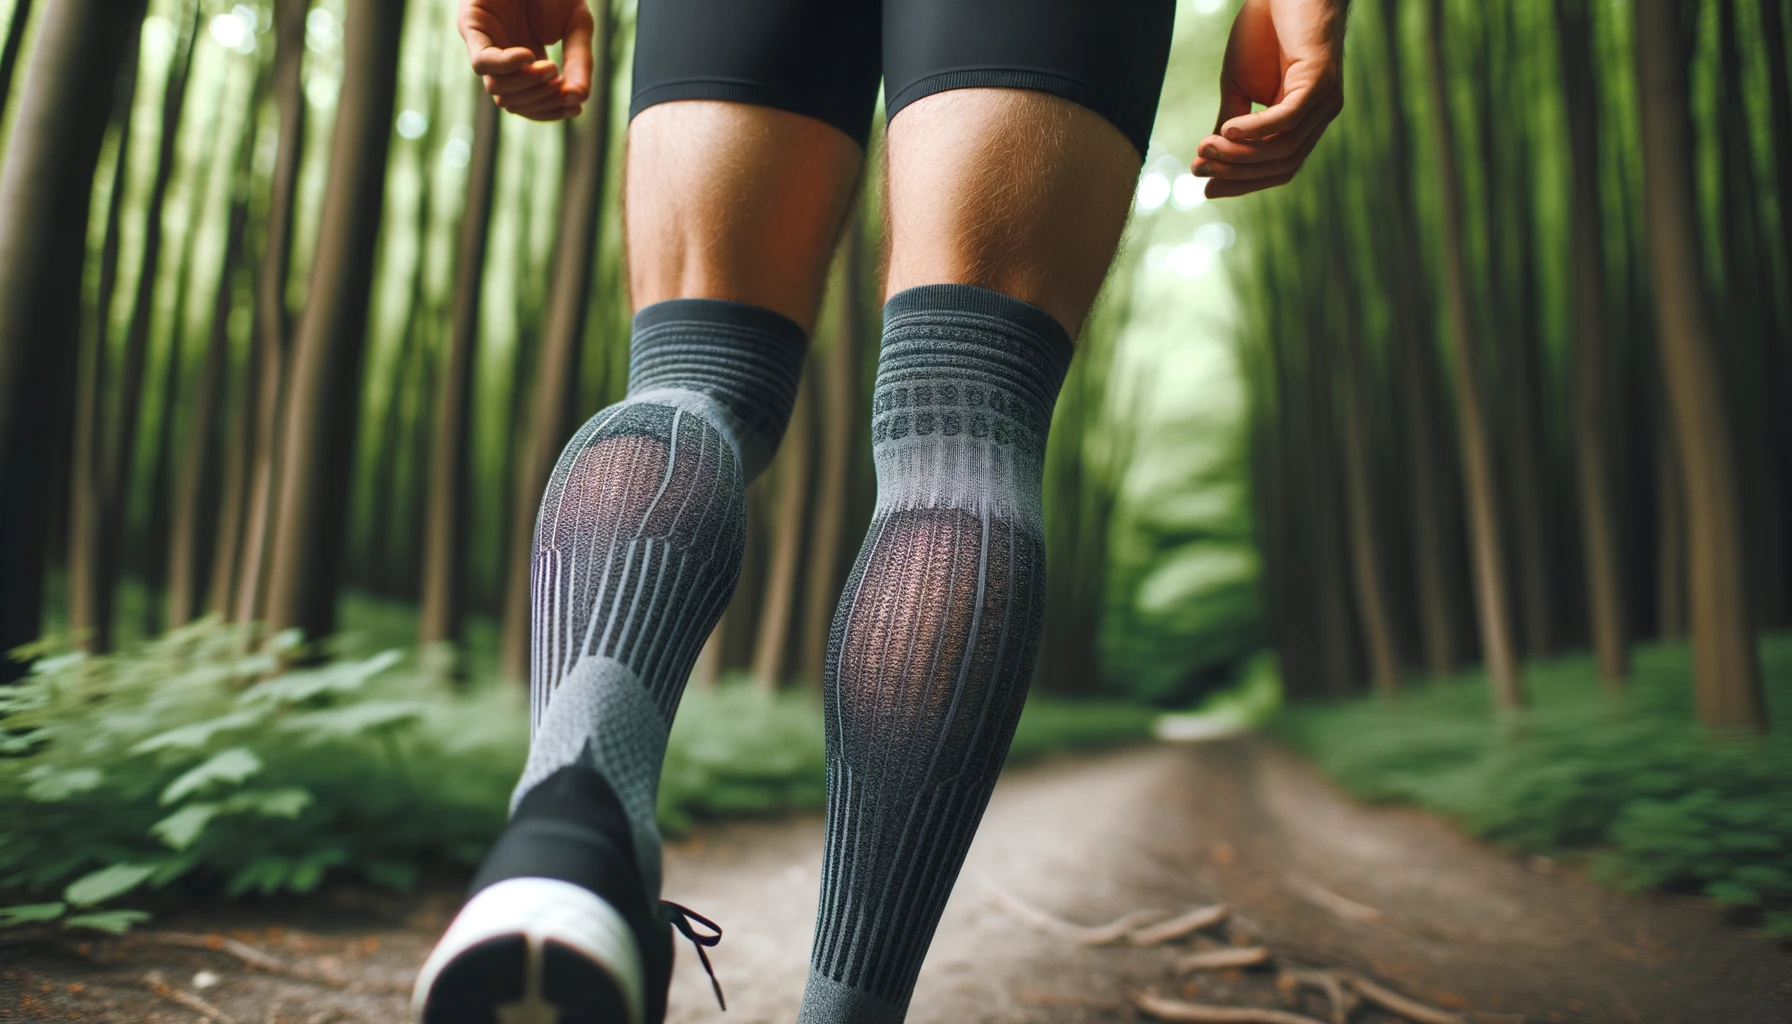 Foto einer Nahaufnahme der Beine eines Läufers, das die Details der Kompressionssocken zeigt.